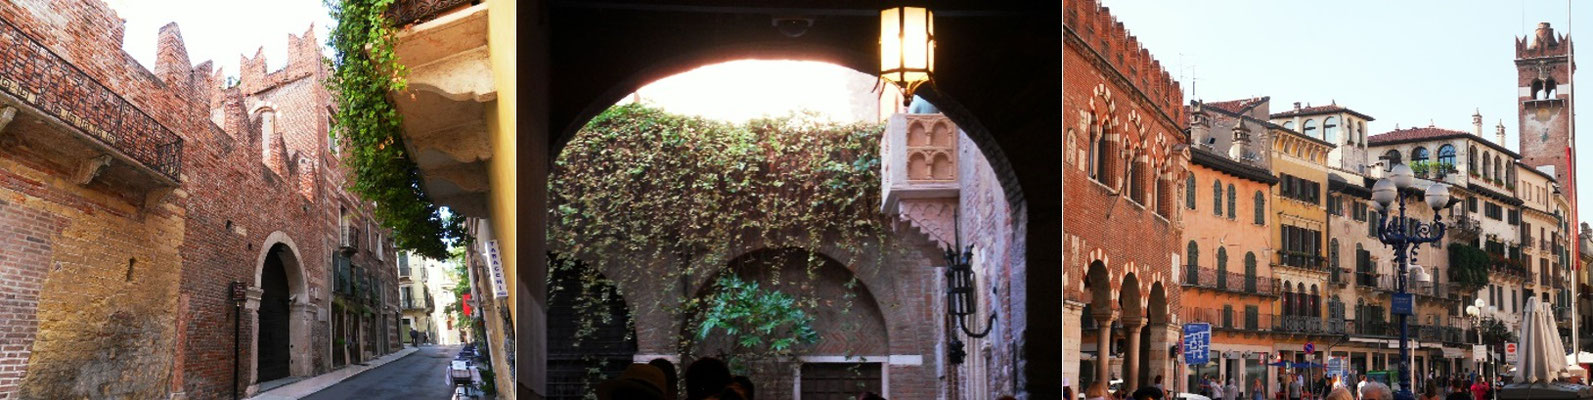 Romeos Residenz… und Julias Verwahrstätte nahe dem Piazza delle Erbe